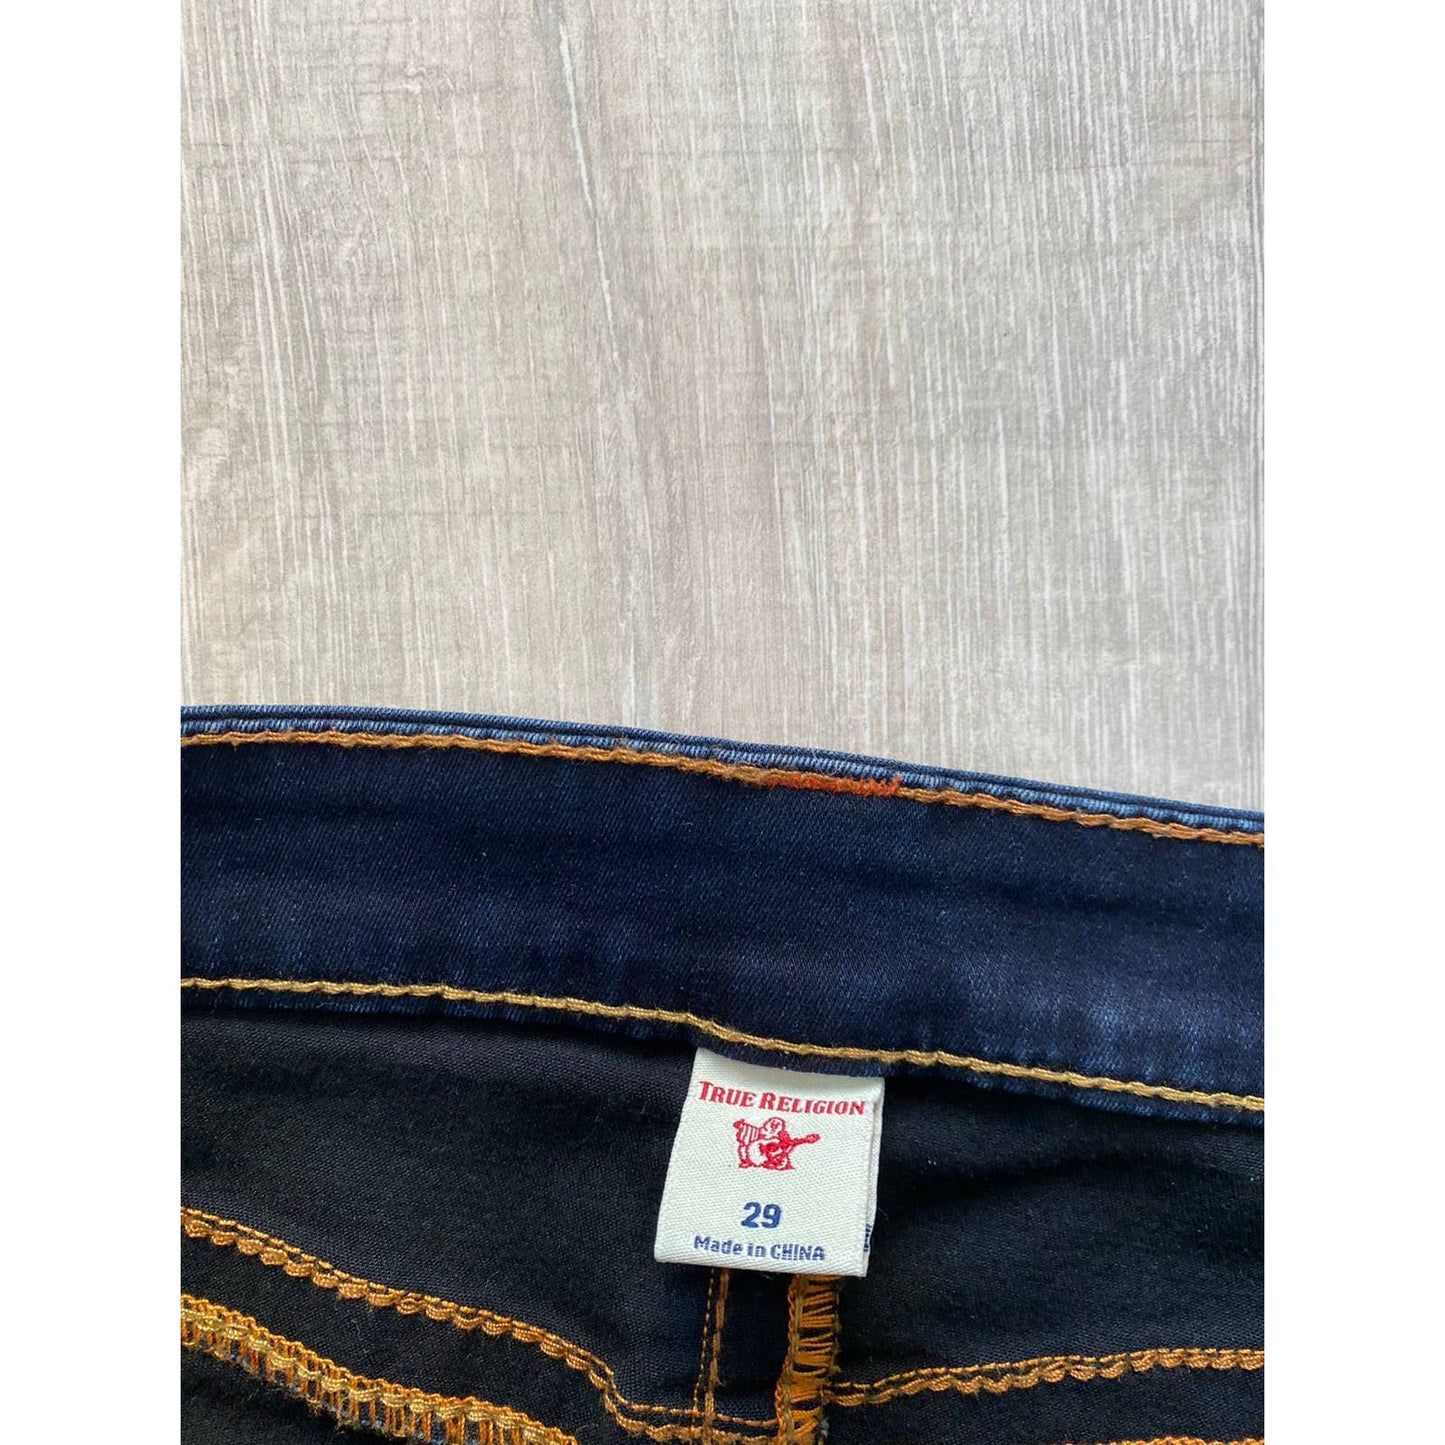 True Religion vintage navy jeans orange stitching